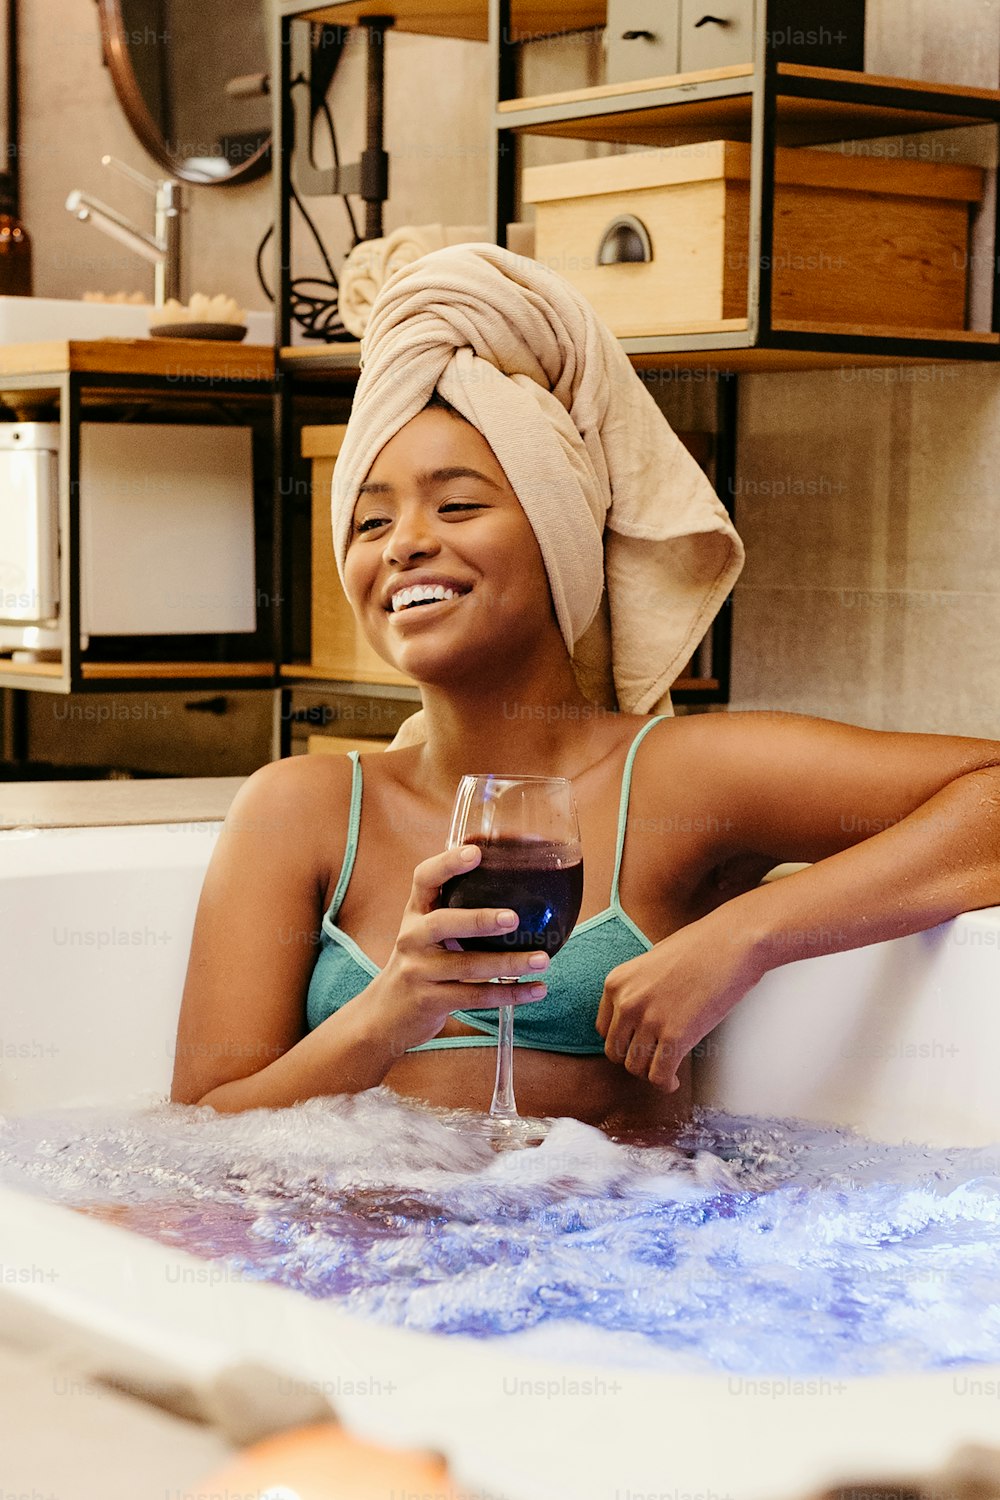 Une femme assise dans une baignoire tenant un verre de vin